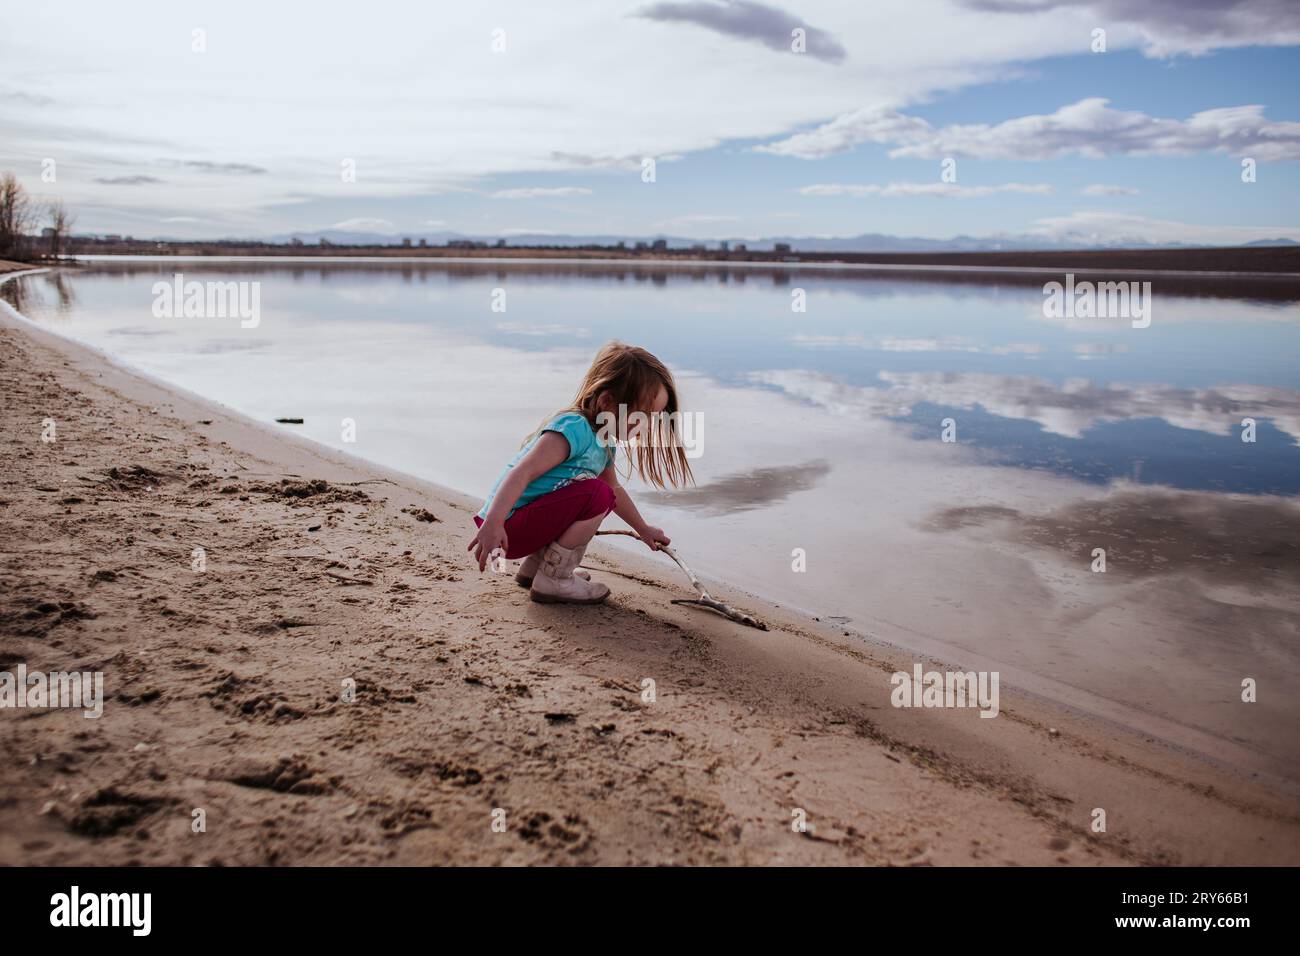 Jeune fille jouant avec bâton sur le bord du lac calme Banque D'Images